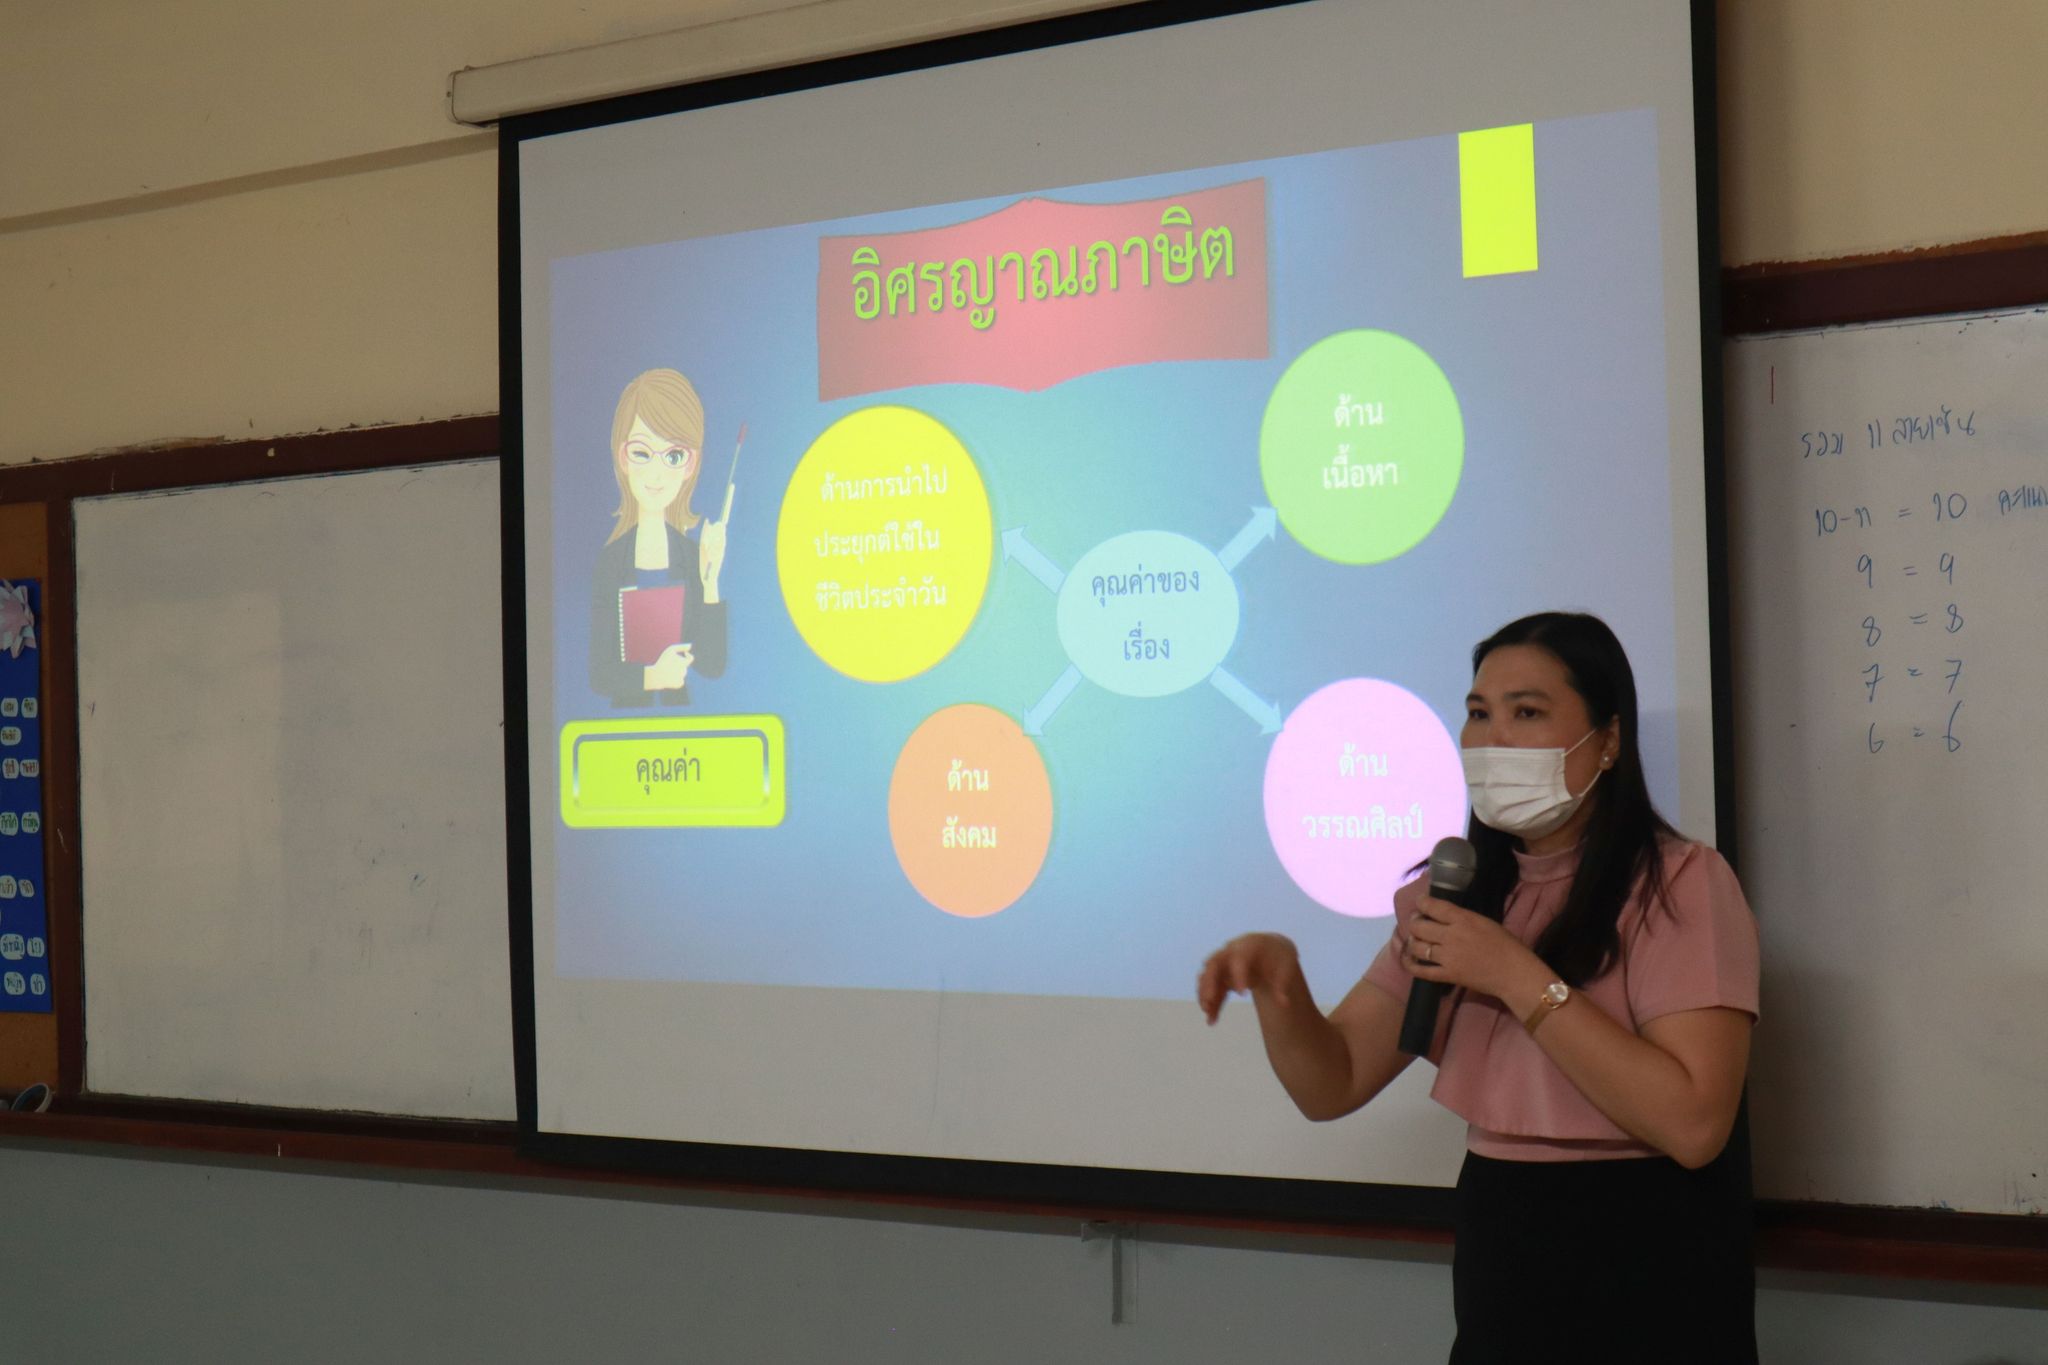 อาจารย์วันวิสา ประมวล อาจารย์ชำนาญการพิเศษ สังกัดกลุ่มสาระ การเรียนรู้ภาษาไทย พร้อมด้วยคณาจารย์กลุ่มสาระการเรียนรู้ภาษาไทยได้จัดกิจกรรม PLC ในกลุ่มสาระฯและเปิดชั้นเรียนรายวิชาภาษาไทยพื้นฐาน 6